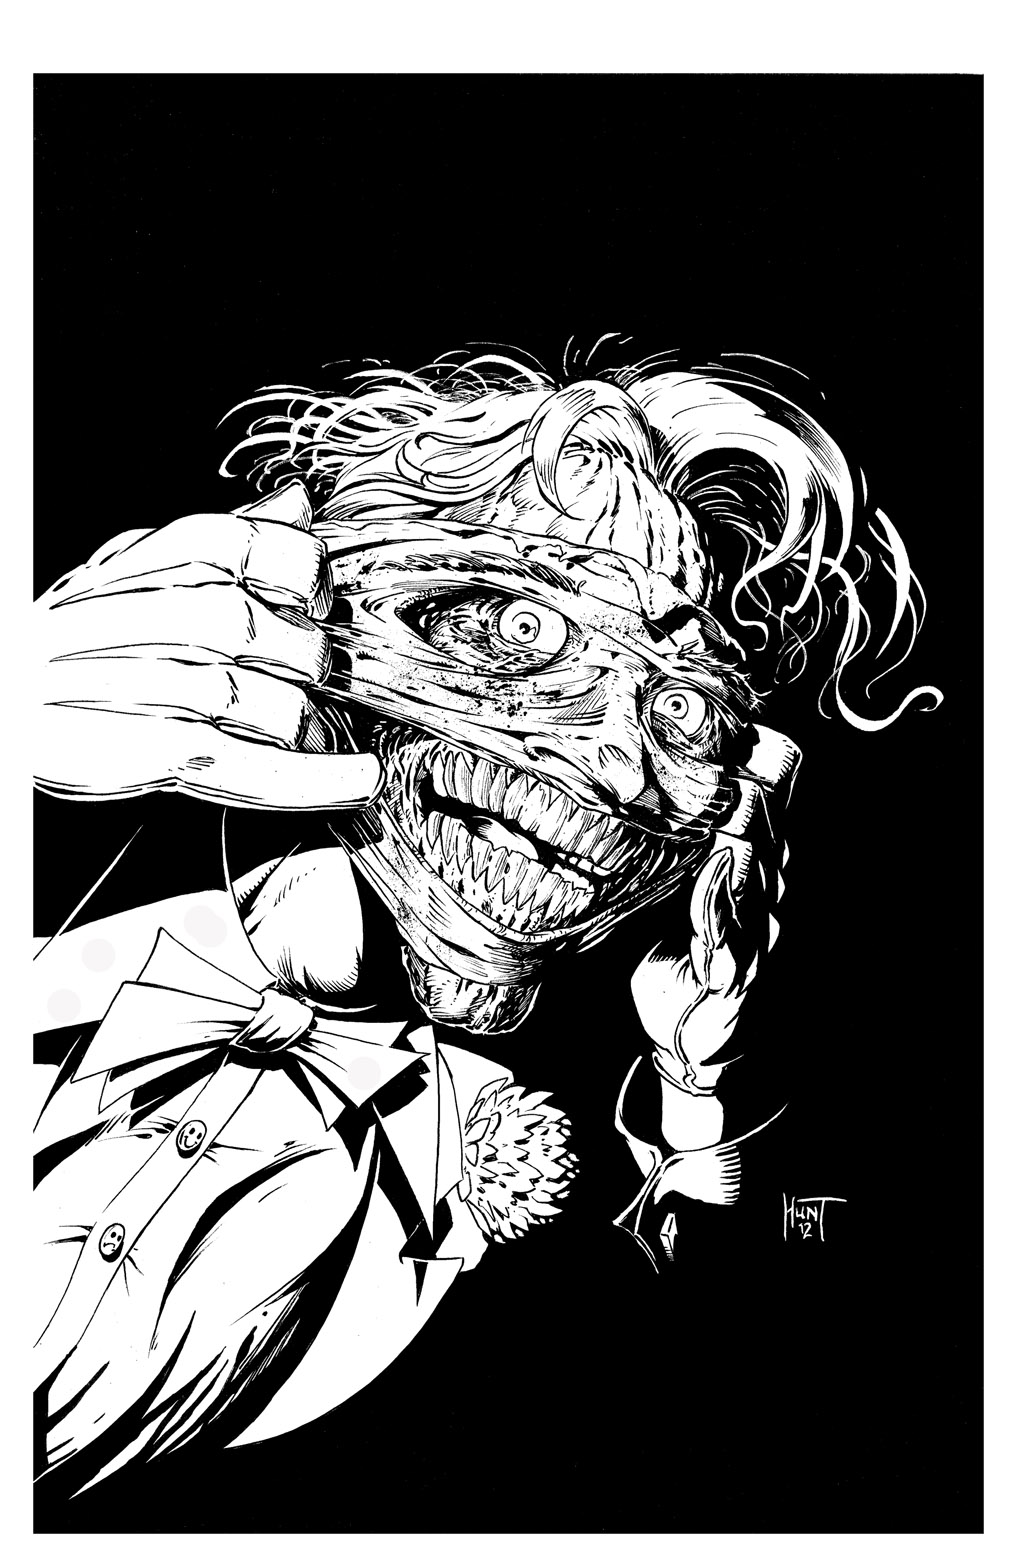 Joker by Ken Hunt